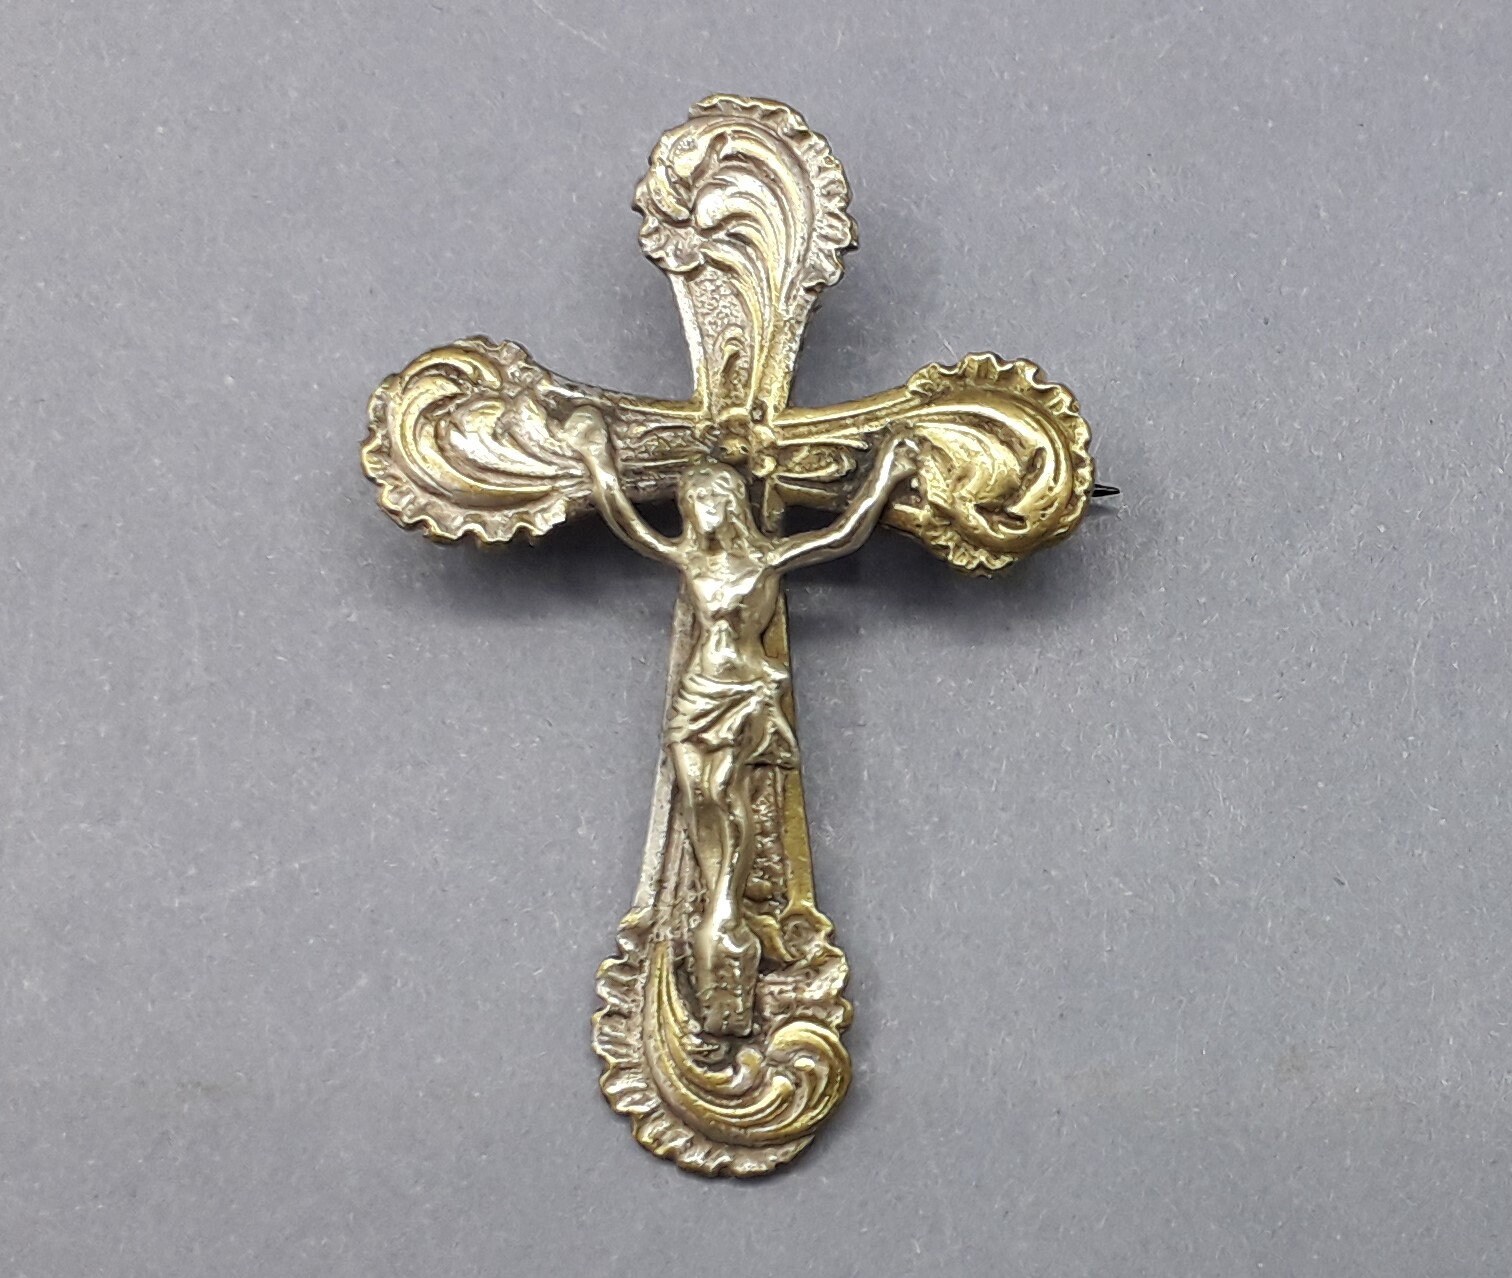 1 Croix objet dévotion religion ésotérisme crucifix christ jésus reliquaire